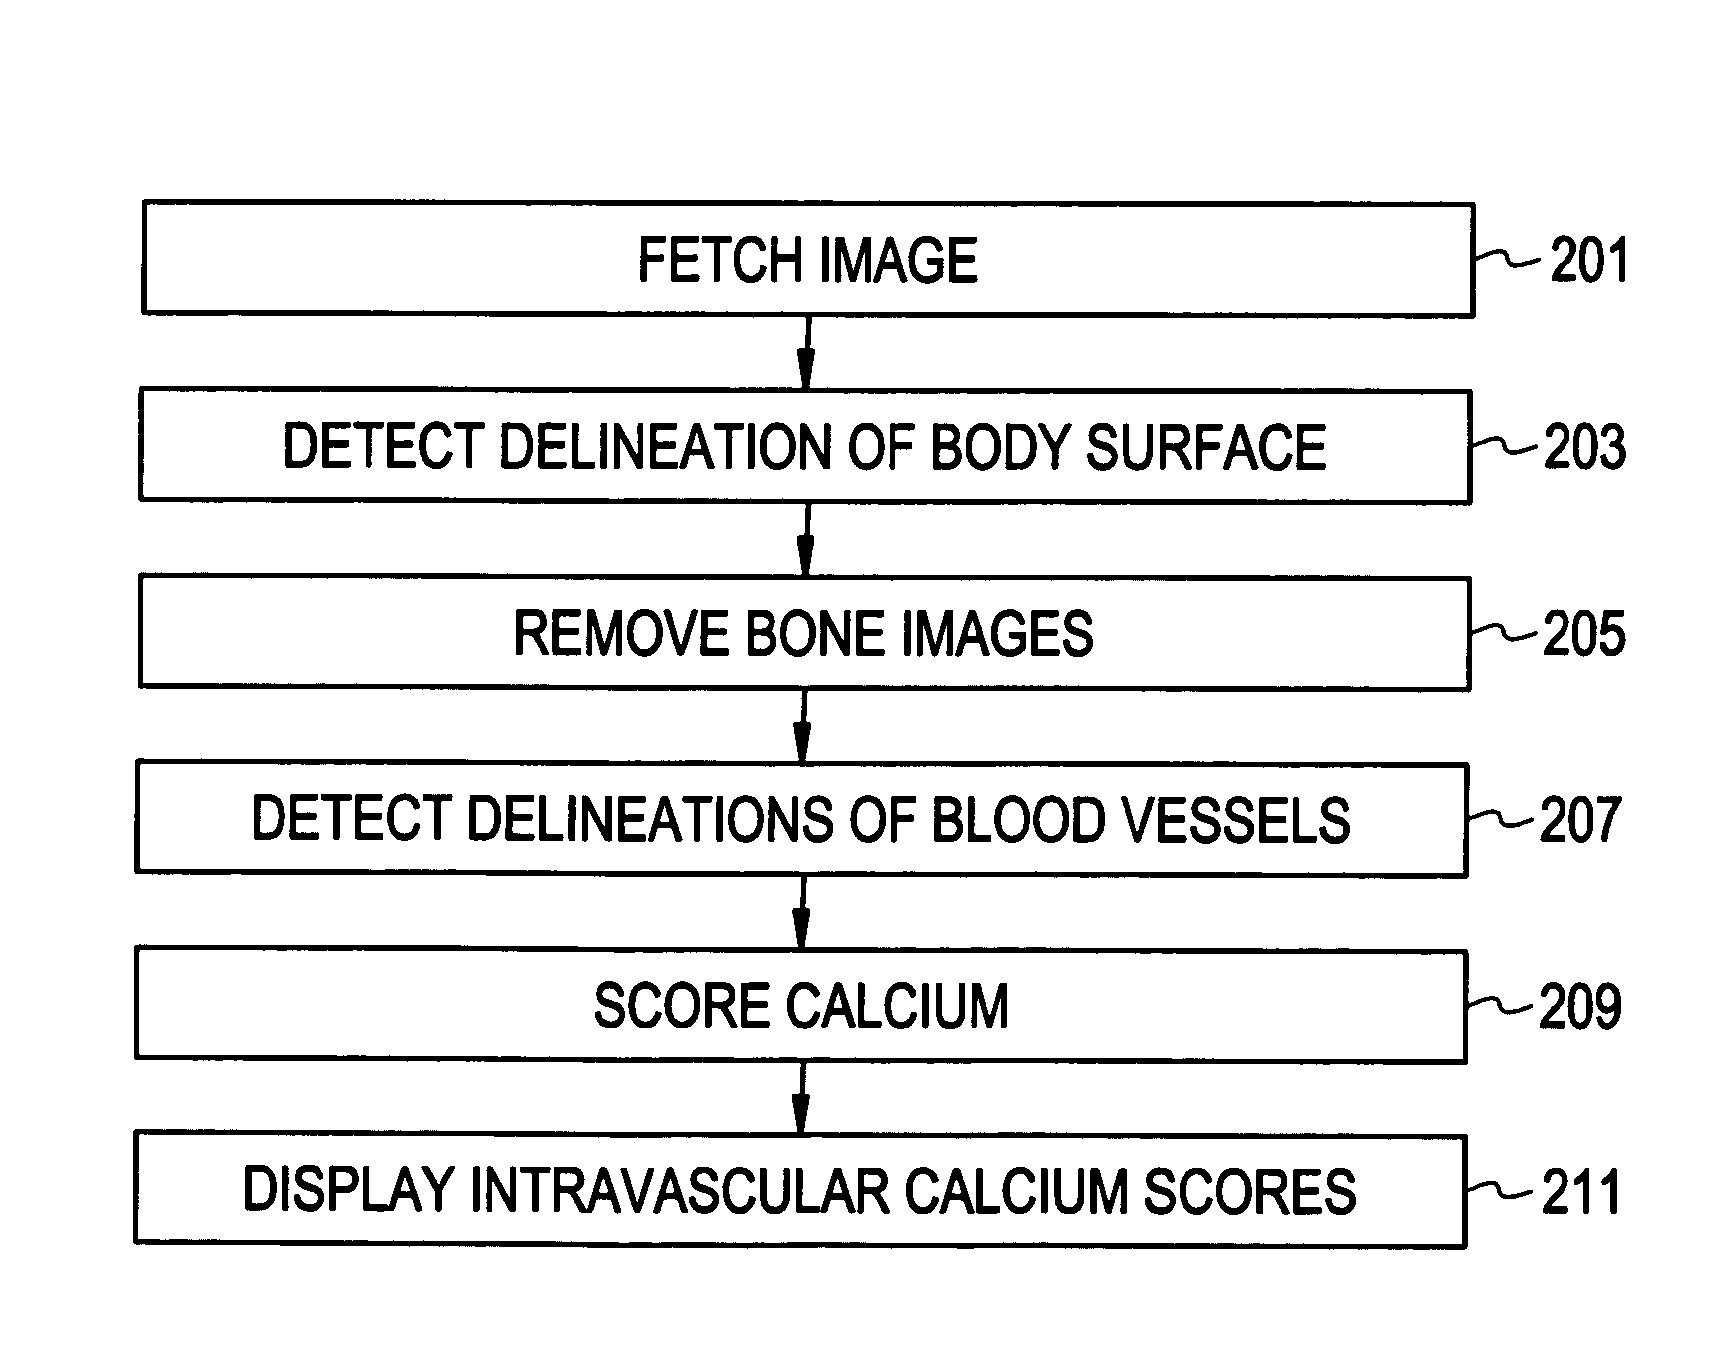 Calcium scoring method and system